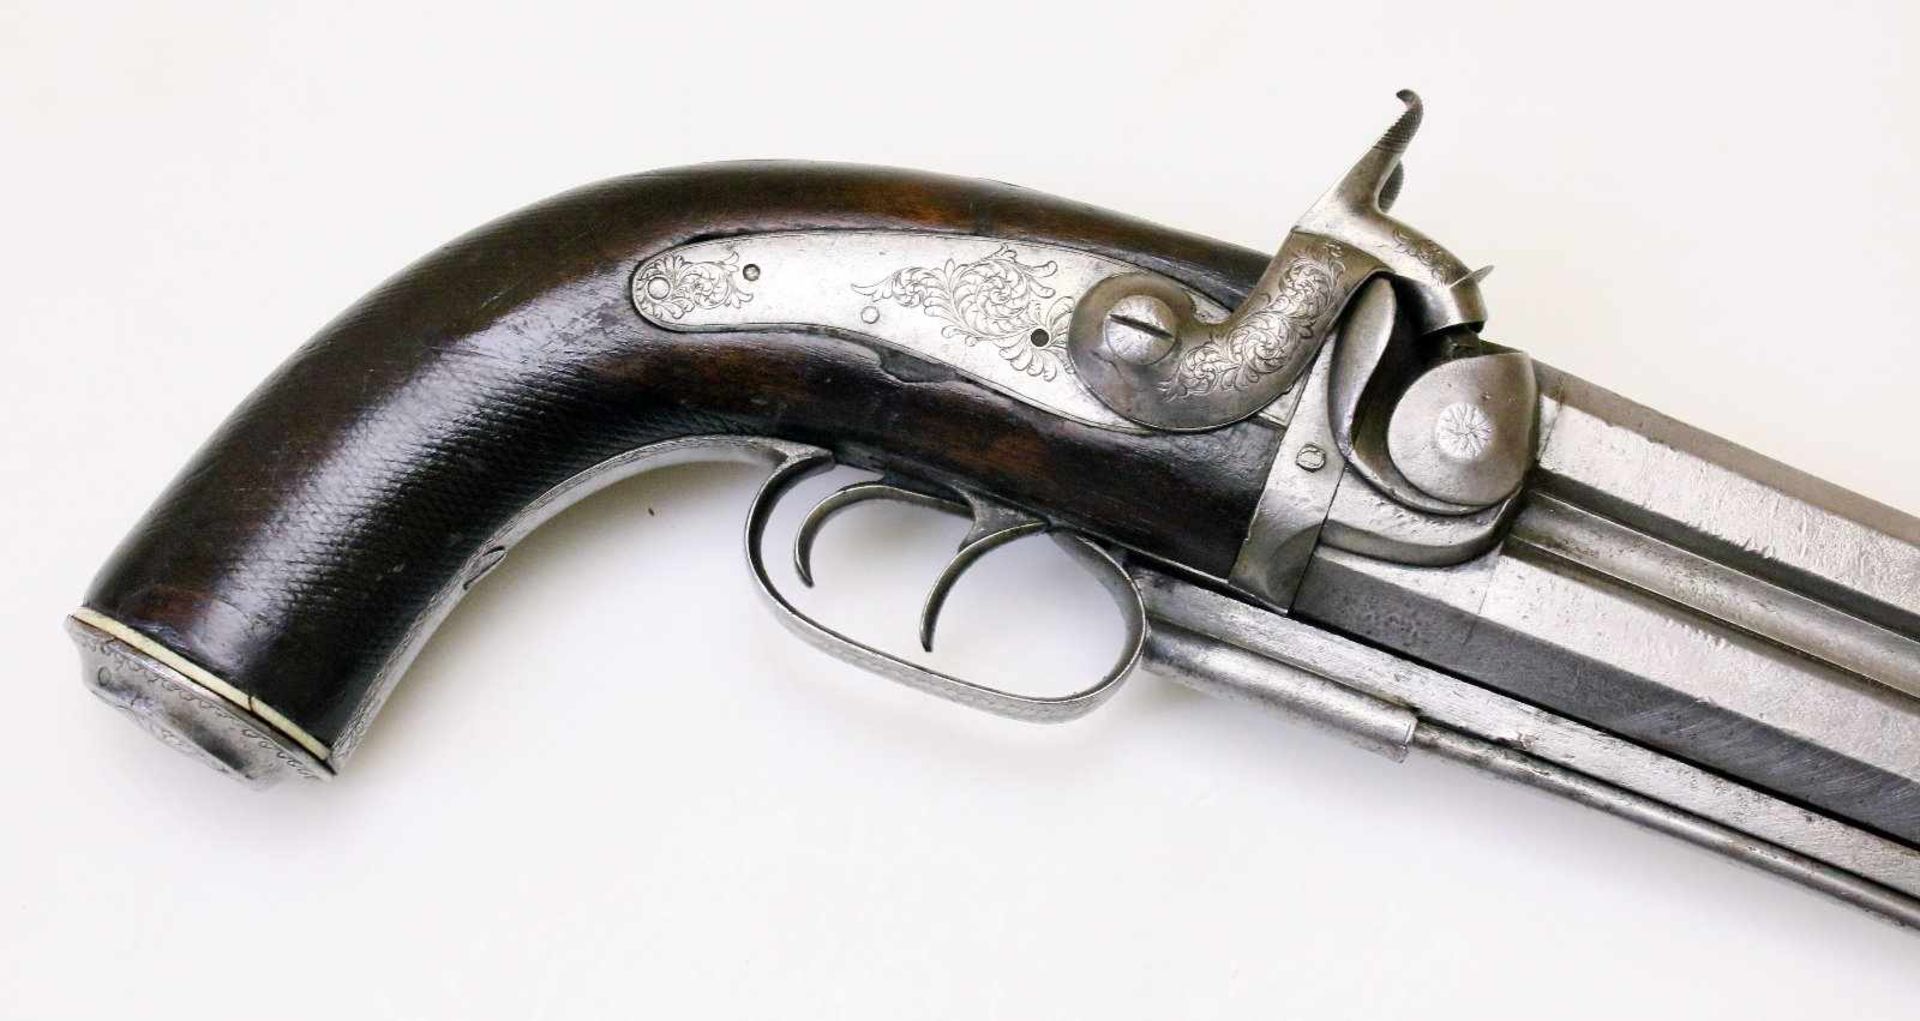 Doppelläufige Perkussionspistole - England um 1850 Cal. 14mm Perk., Zustand 2. Zwei übereinander - Bild 3 aus 15